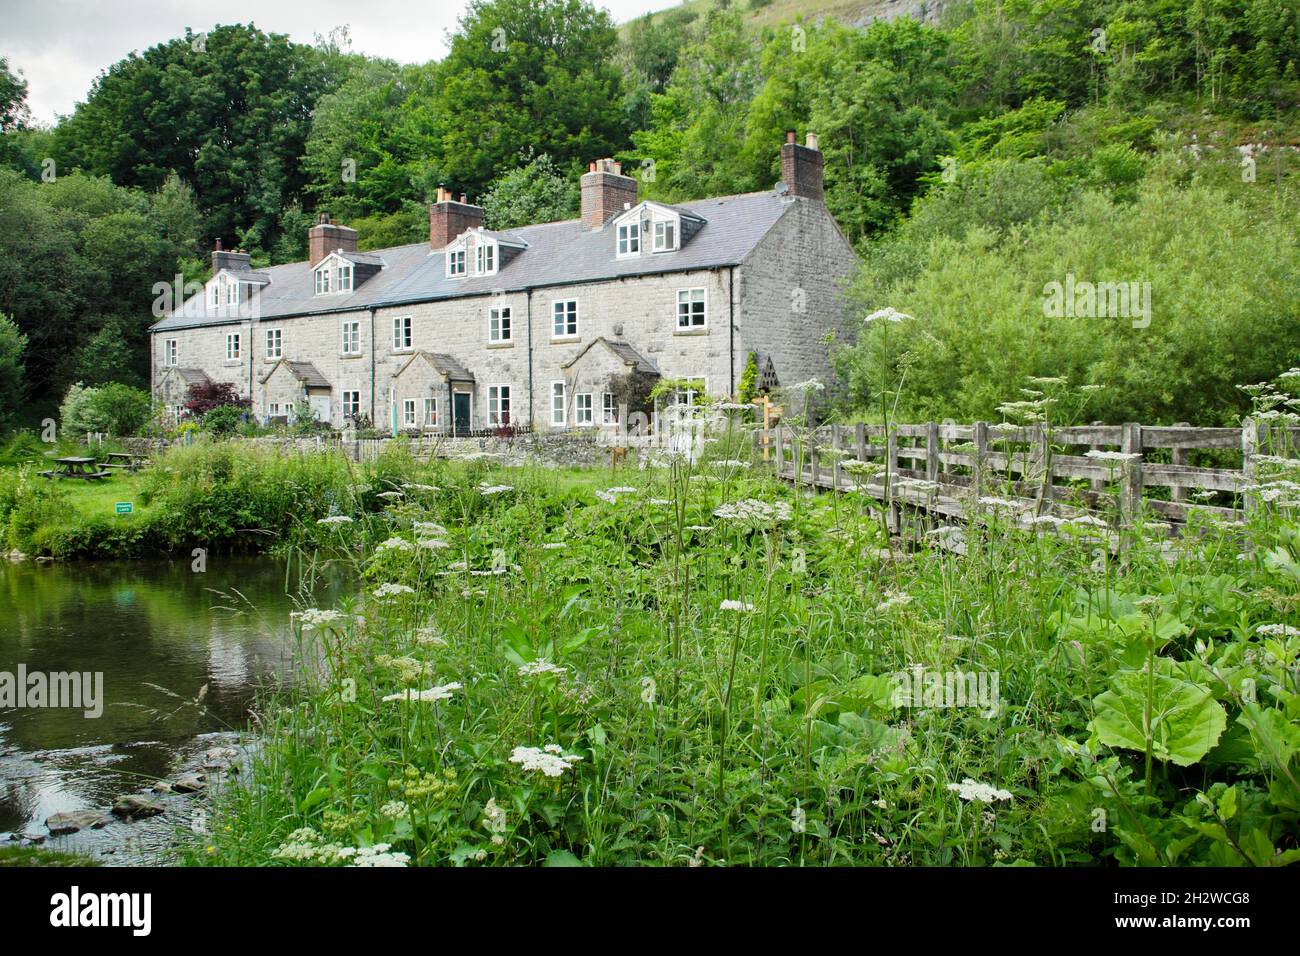 Blackwell Mill Cottages am Fluss Wye, Upper Wye Valley in der Nähe von Buxton, Peak District, Derbyshire, England, Großbritannien. Stockfoto